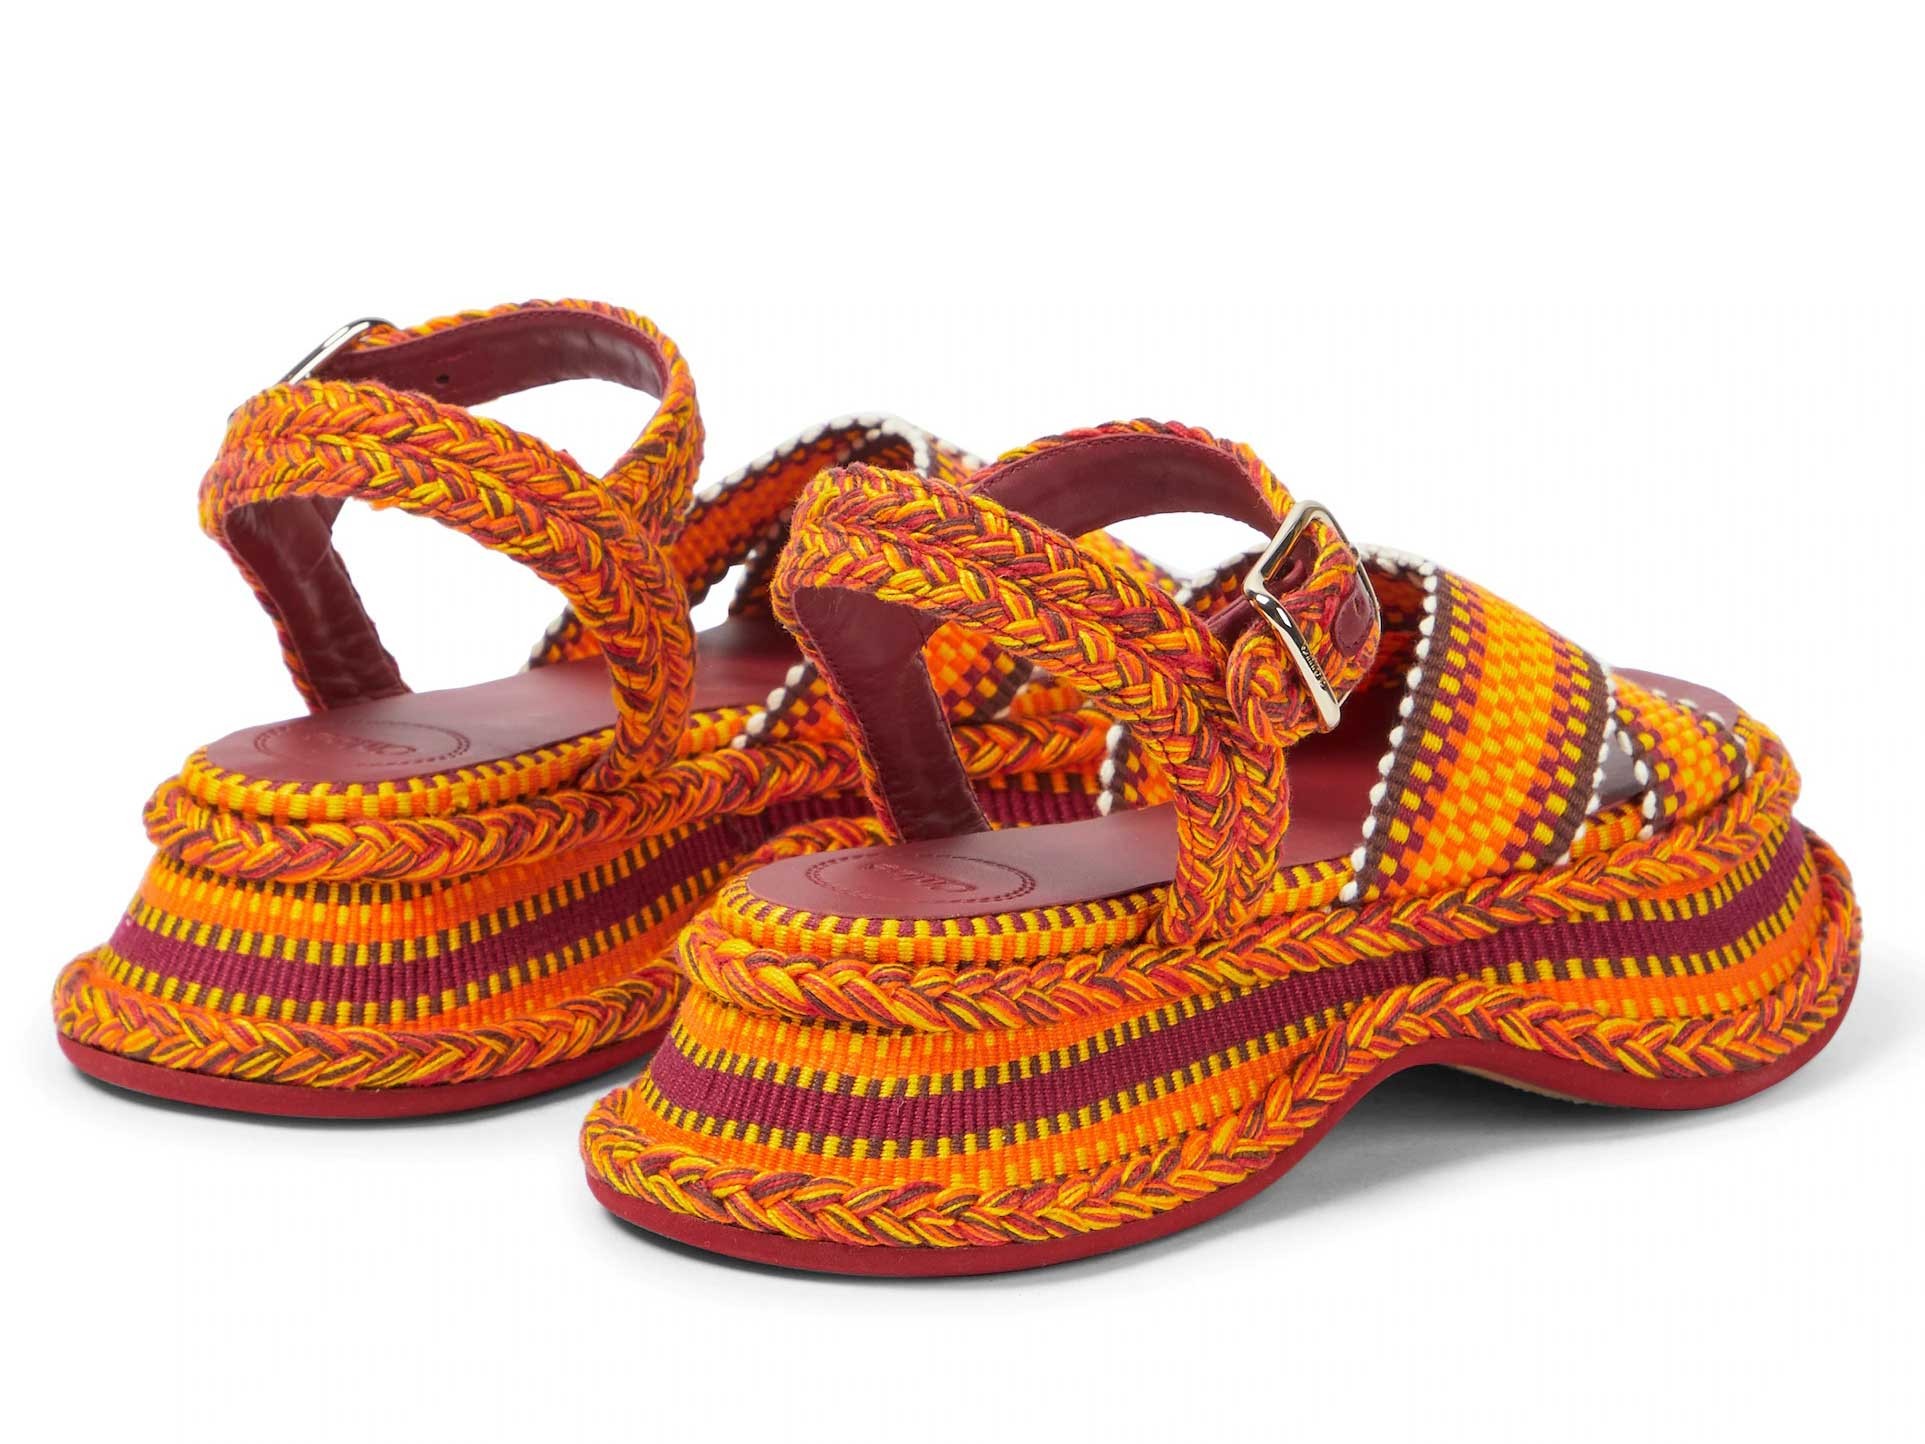 Exclusivas sandalias multicolores de CHLOÉ, con artesanía paraguaya